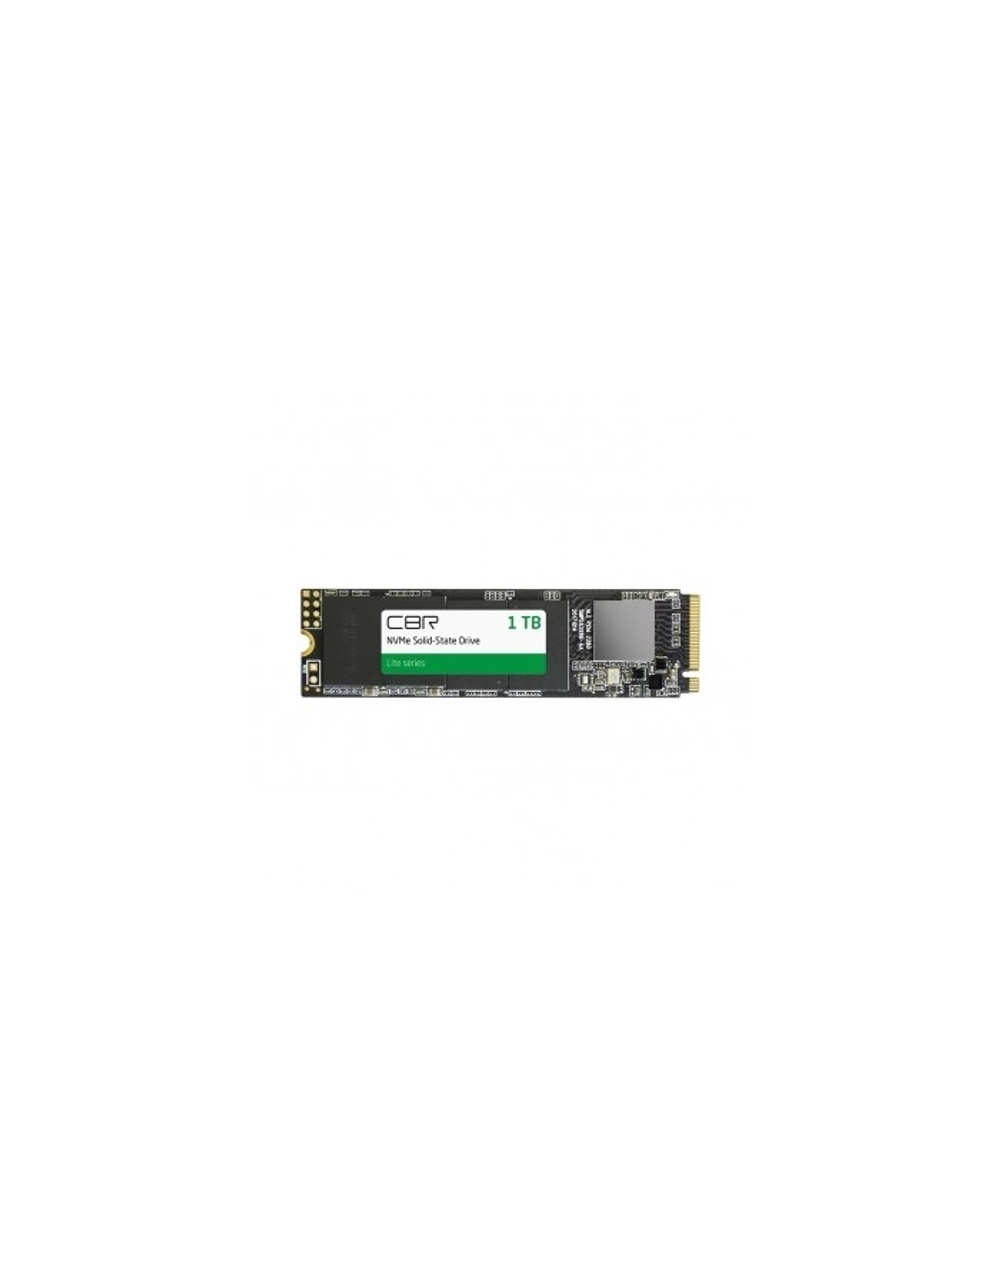 CBR SSD-001TB-M.2-LT22, Внутренний SSD-накопитель, серия "Lite", 1024 GB, M.2 2280, PCIe 3.0 x4, NVMe 1.3, SM2263XT, 3D TLC NAND, R/W speed up to 2300/1800 MB/s, TBW (TB) 500